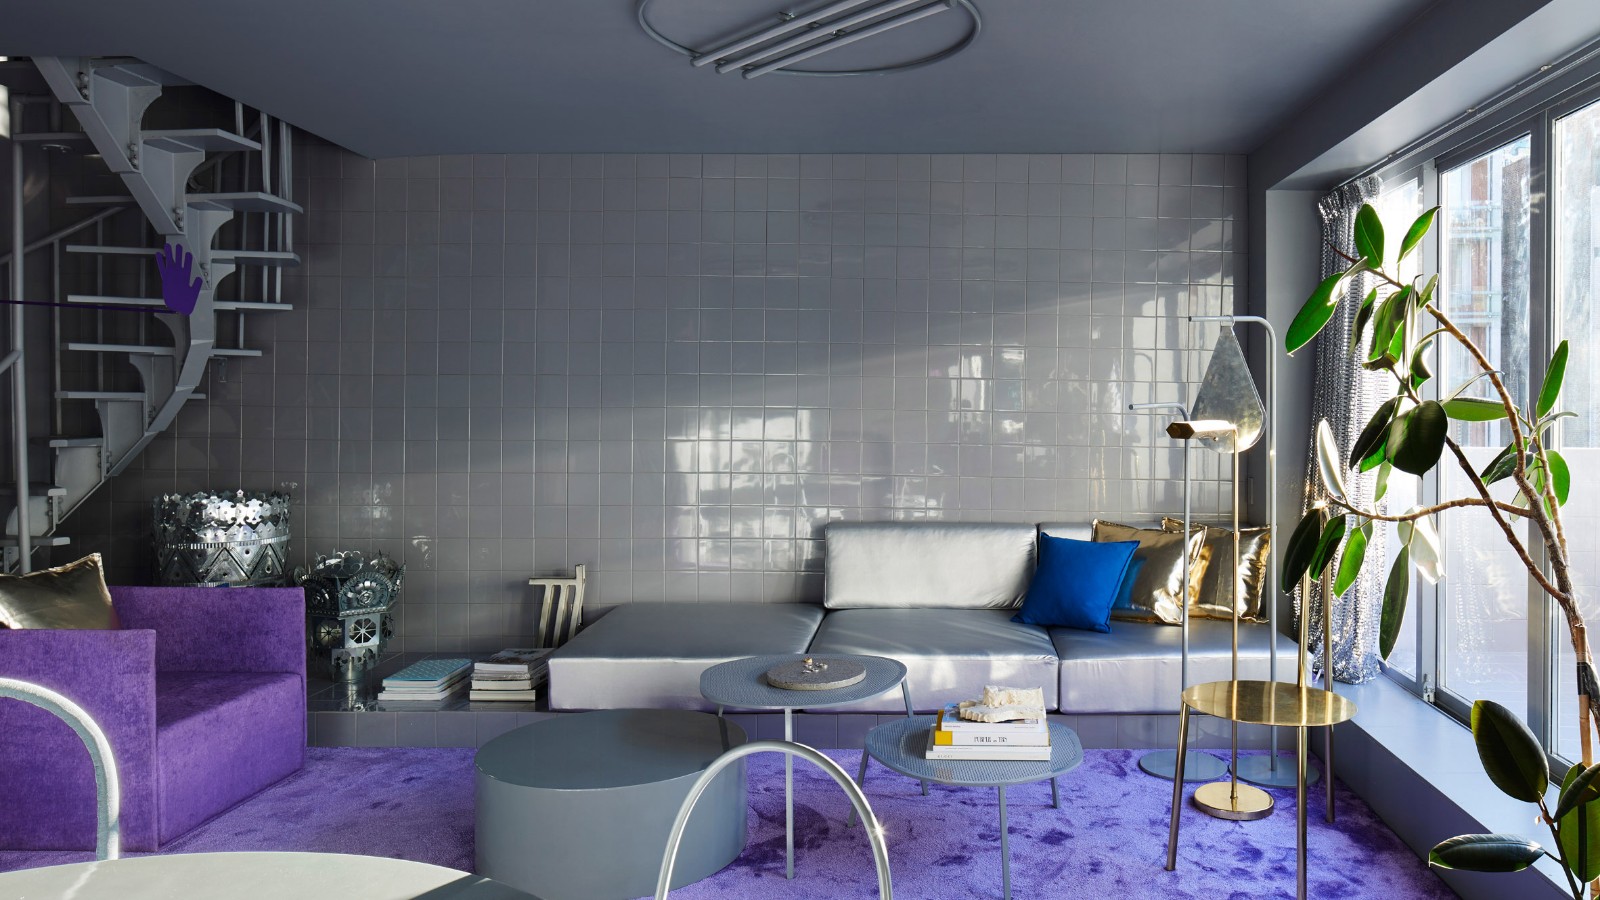 设计师自宅翻新设计——紫罗兰色的精致简约 | Crosby Studios-建E网设计案例